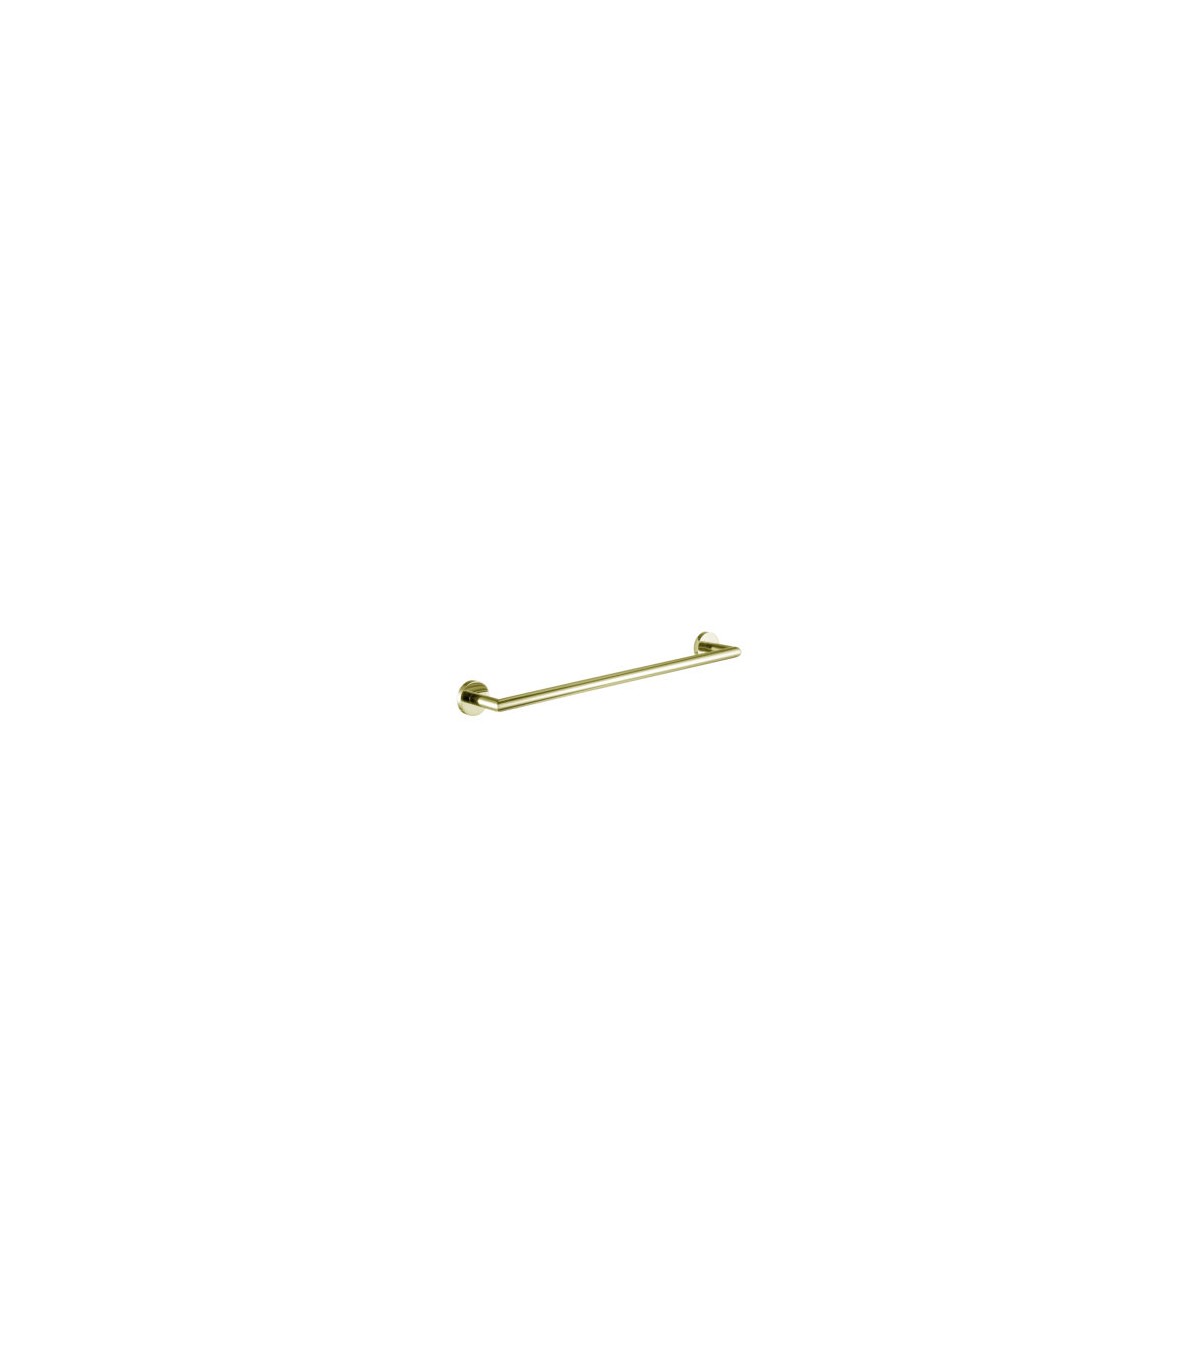 Toallero individual tipo barra para montaje en pared fabricado en metal  color dorado cepillado 322232 Tutumi